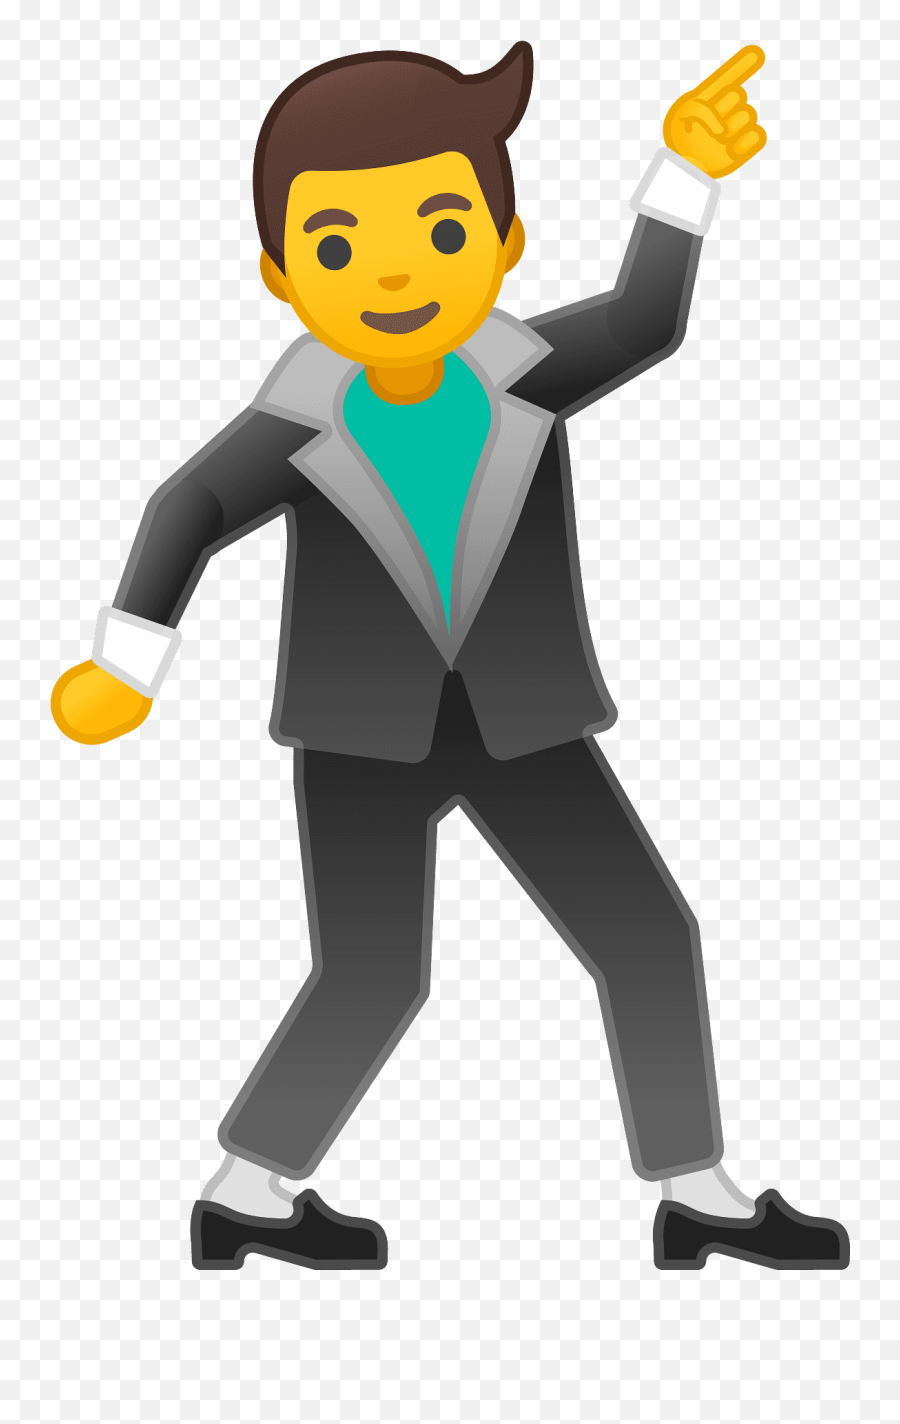 Man Dancing Emoji - Man Dancing Emoji,Dancing Emojis